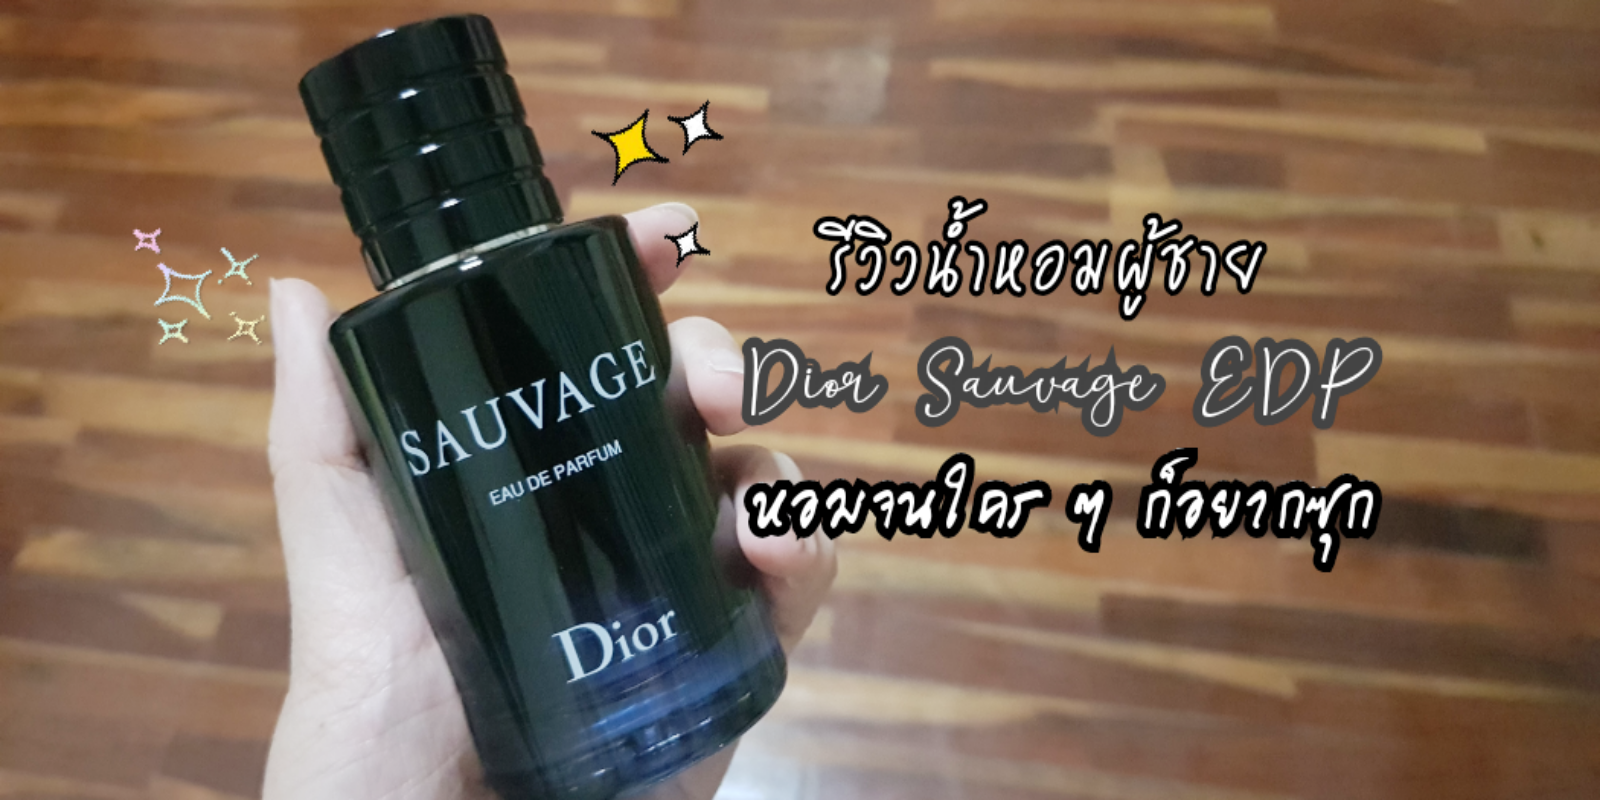 Dior Sauvage Elixir นำหอมกลนครองเทศ ลาเวนเดอร เปลอกไม  DIOR